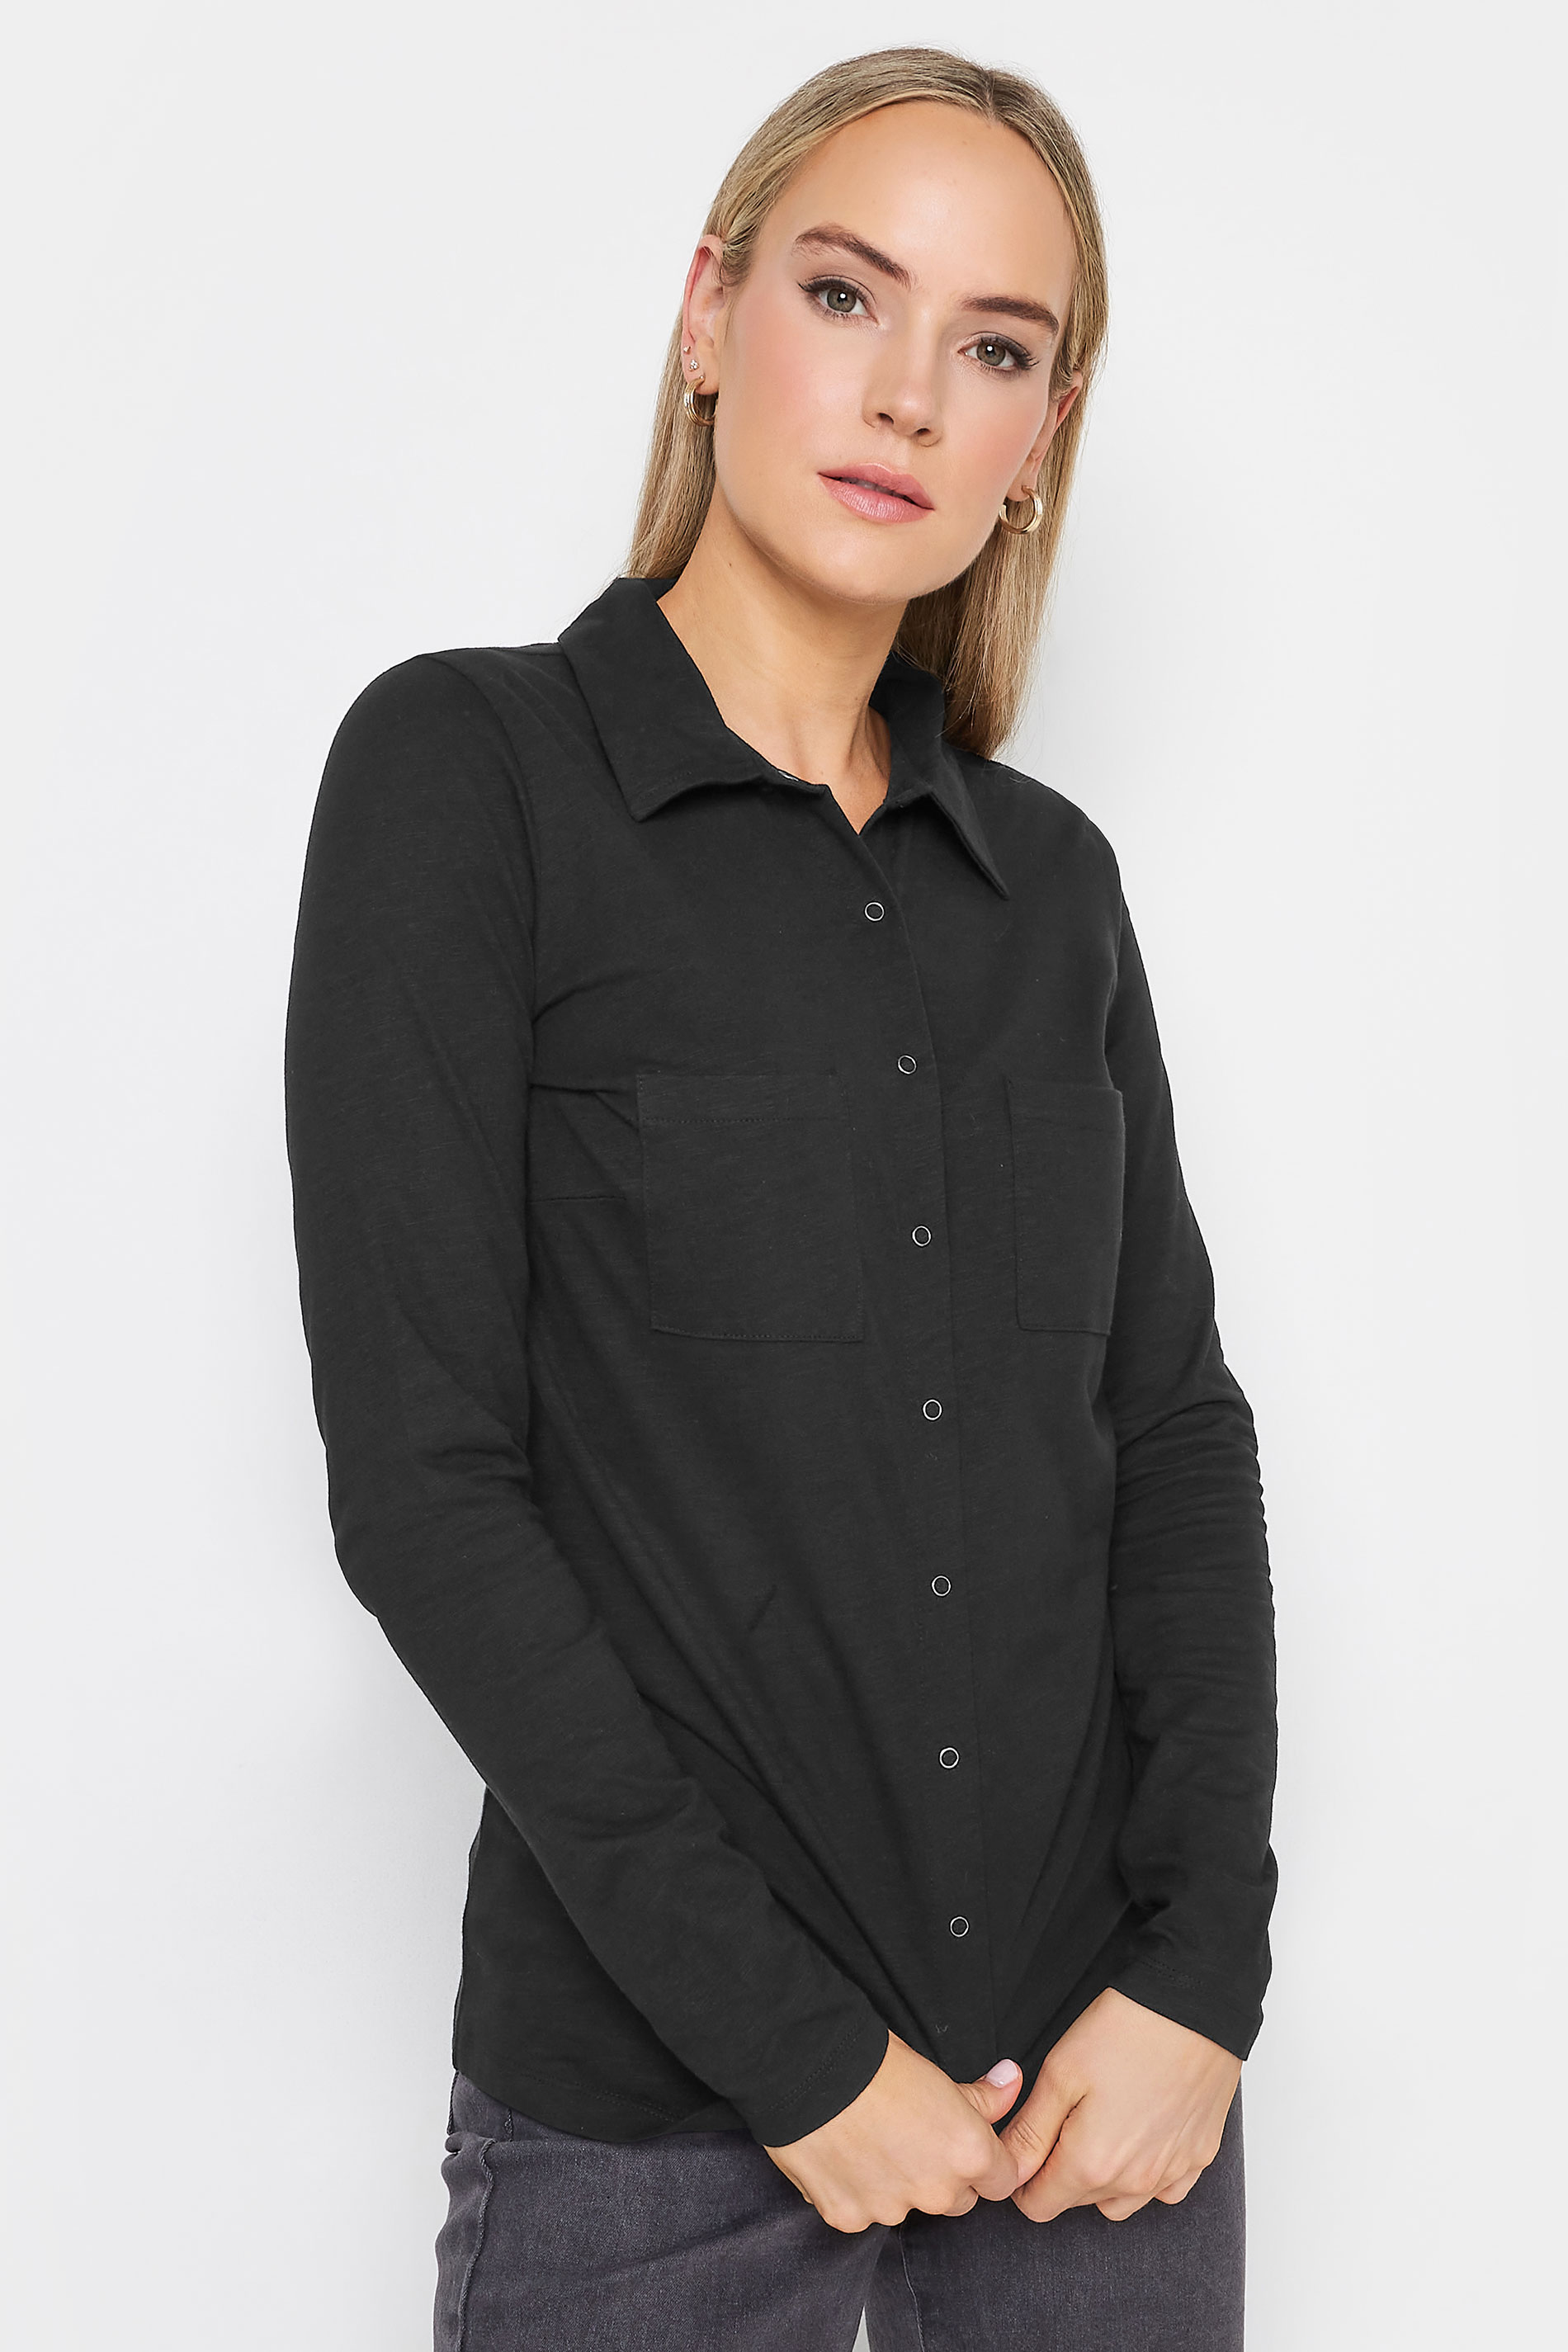 LTS Tall Women's Black Cotton Jersey Shirt | Long Tall Sally 1